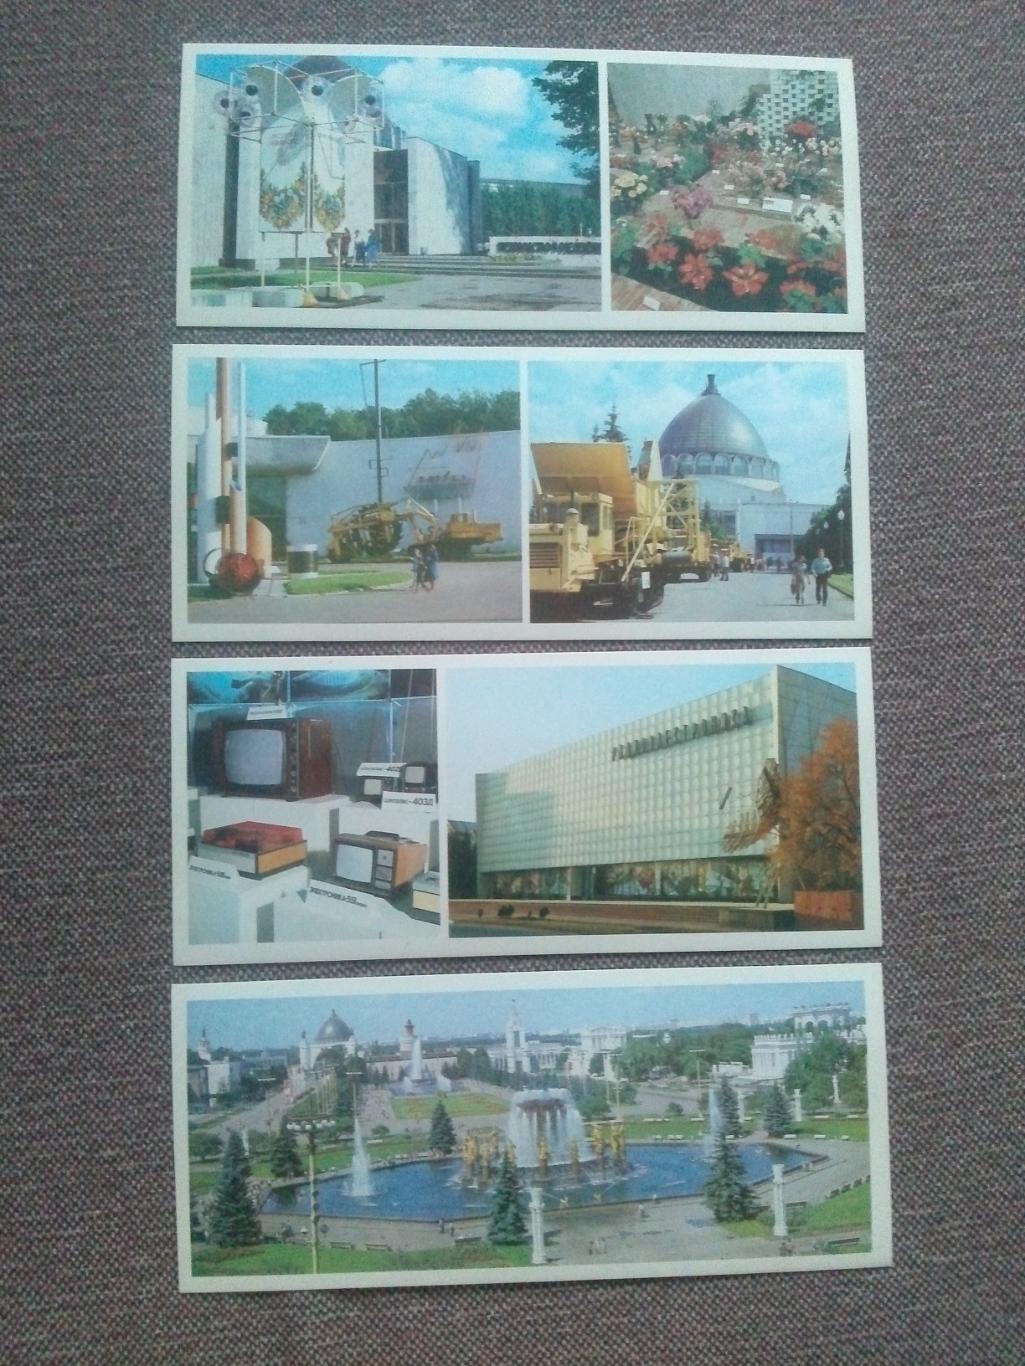 Памятные места СССР : ВДНХ СССР 1985 г. полный набор - 15 открыток (Выставка) 3